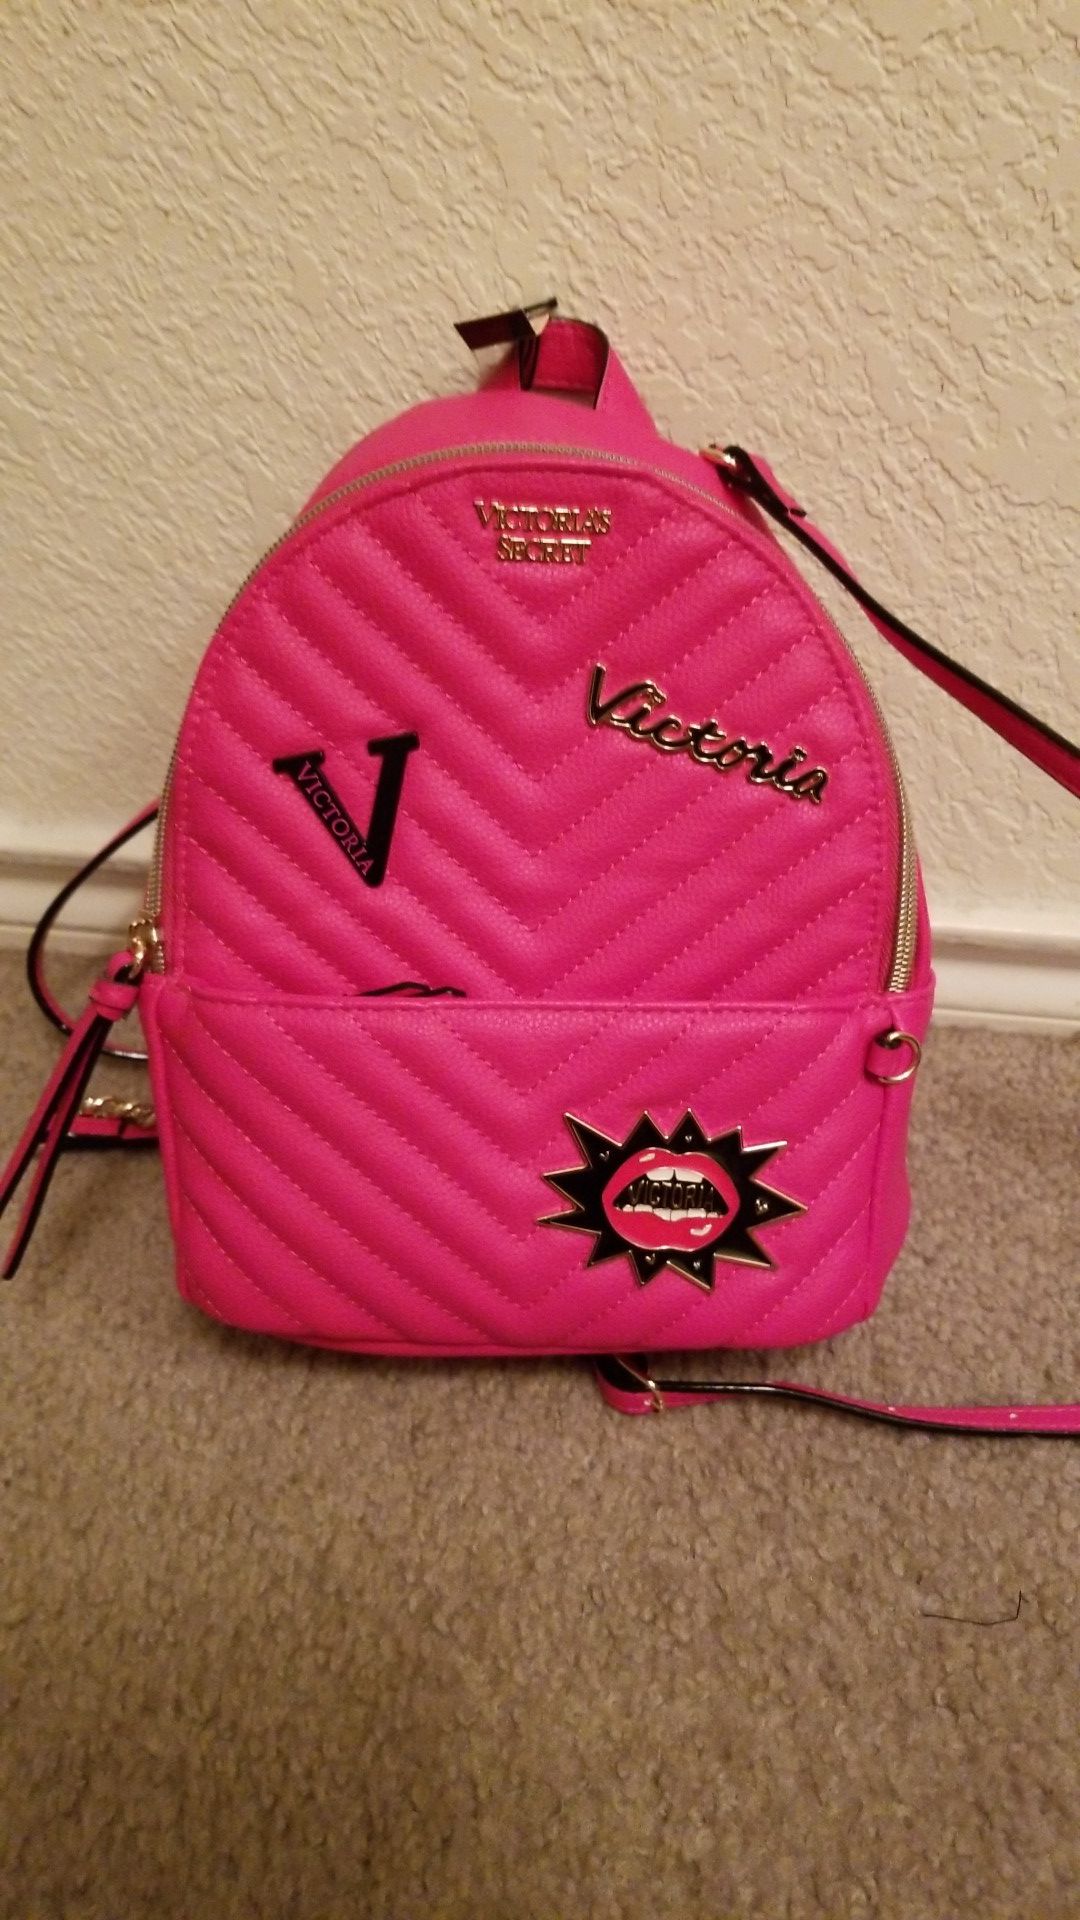 NWT Victoria's Secret hot pink mini backpack purse $20 firm mpu